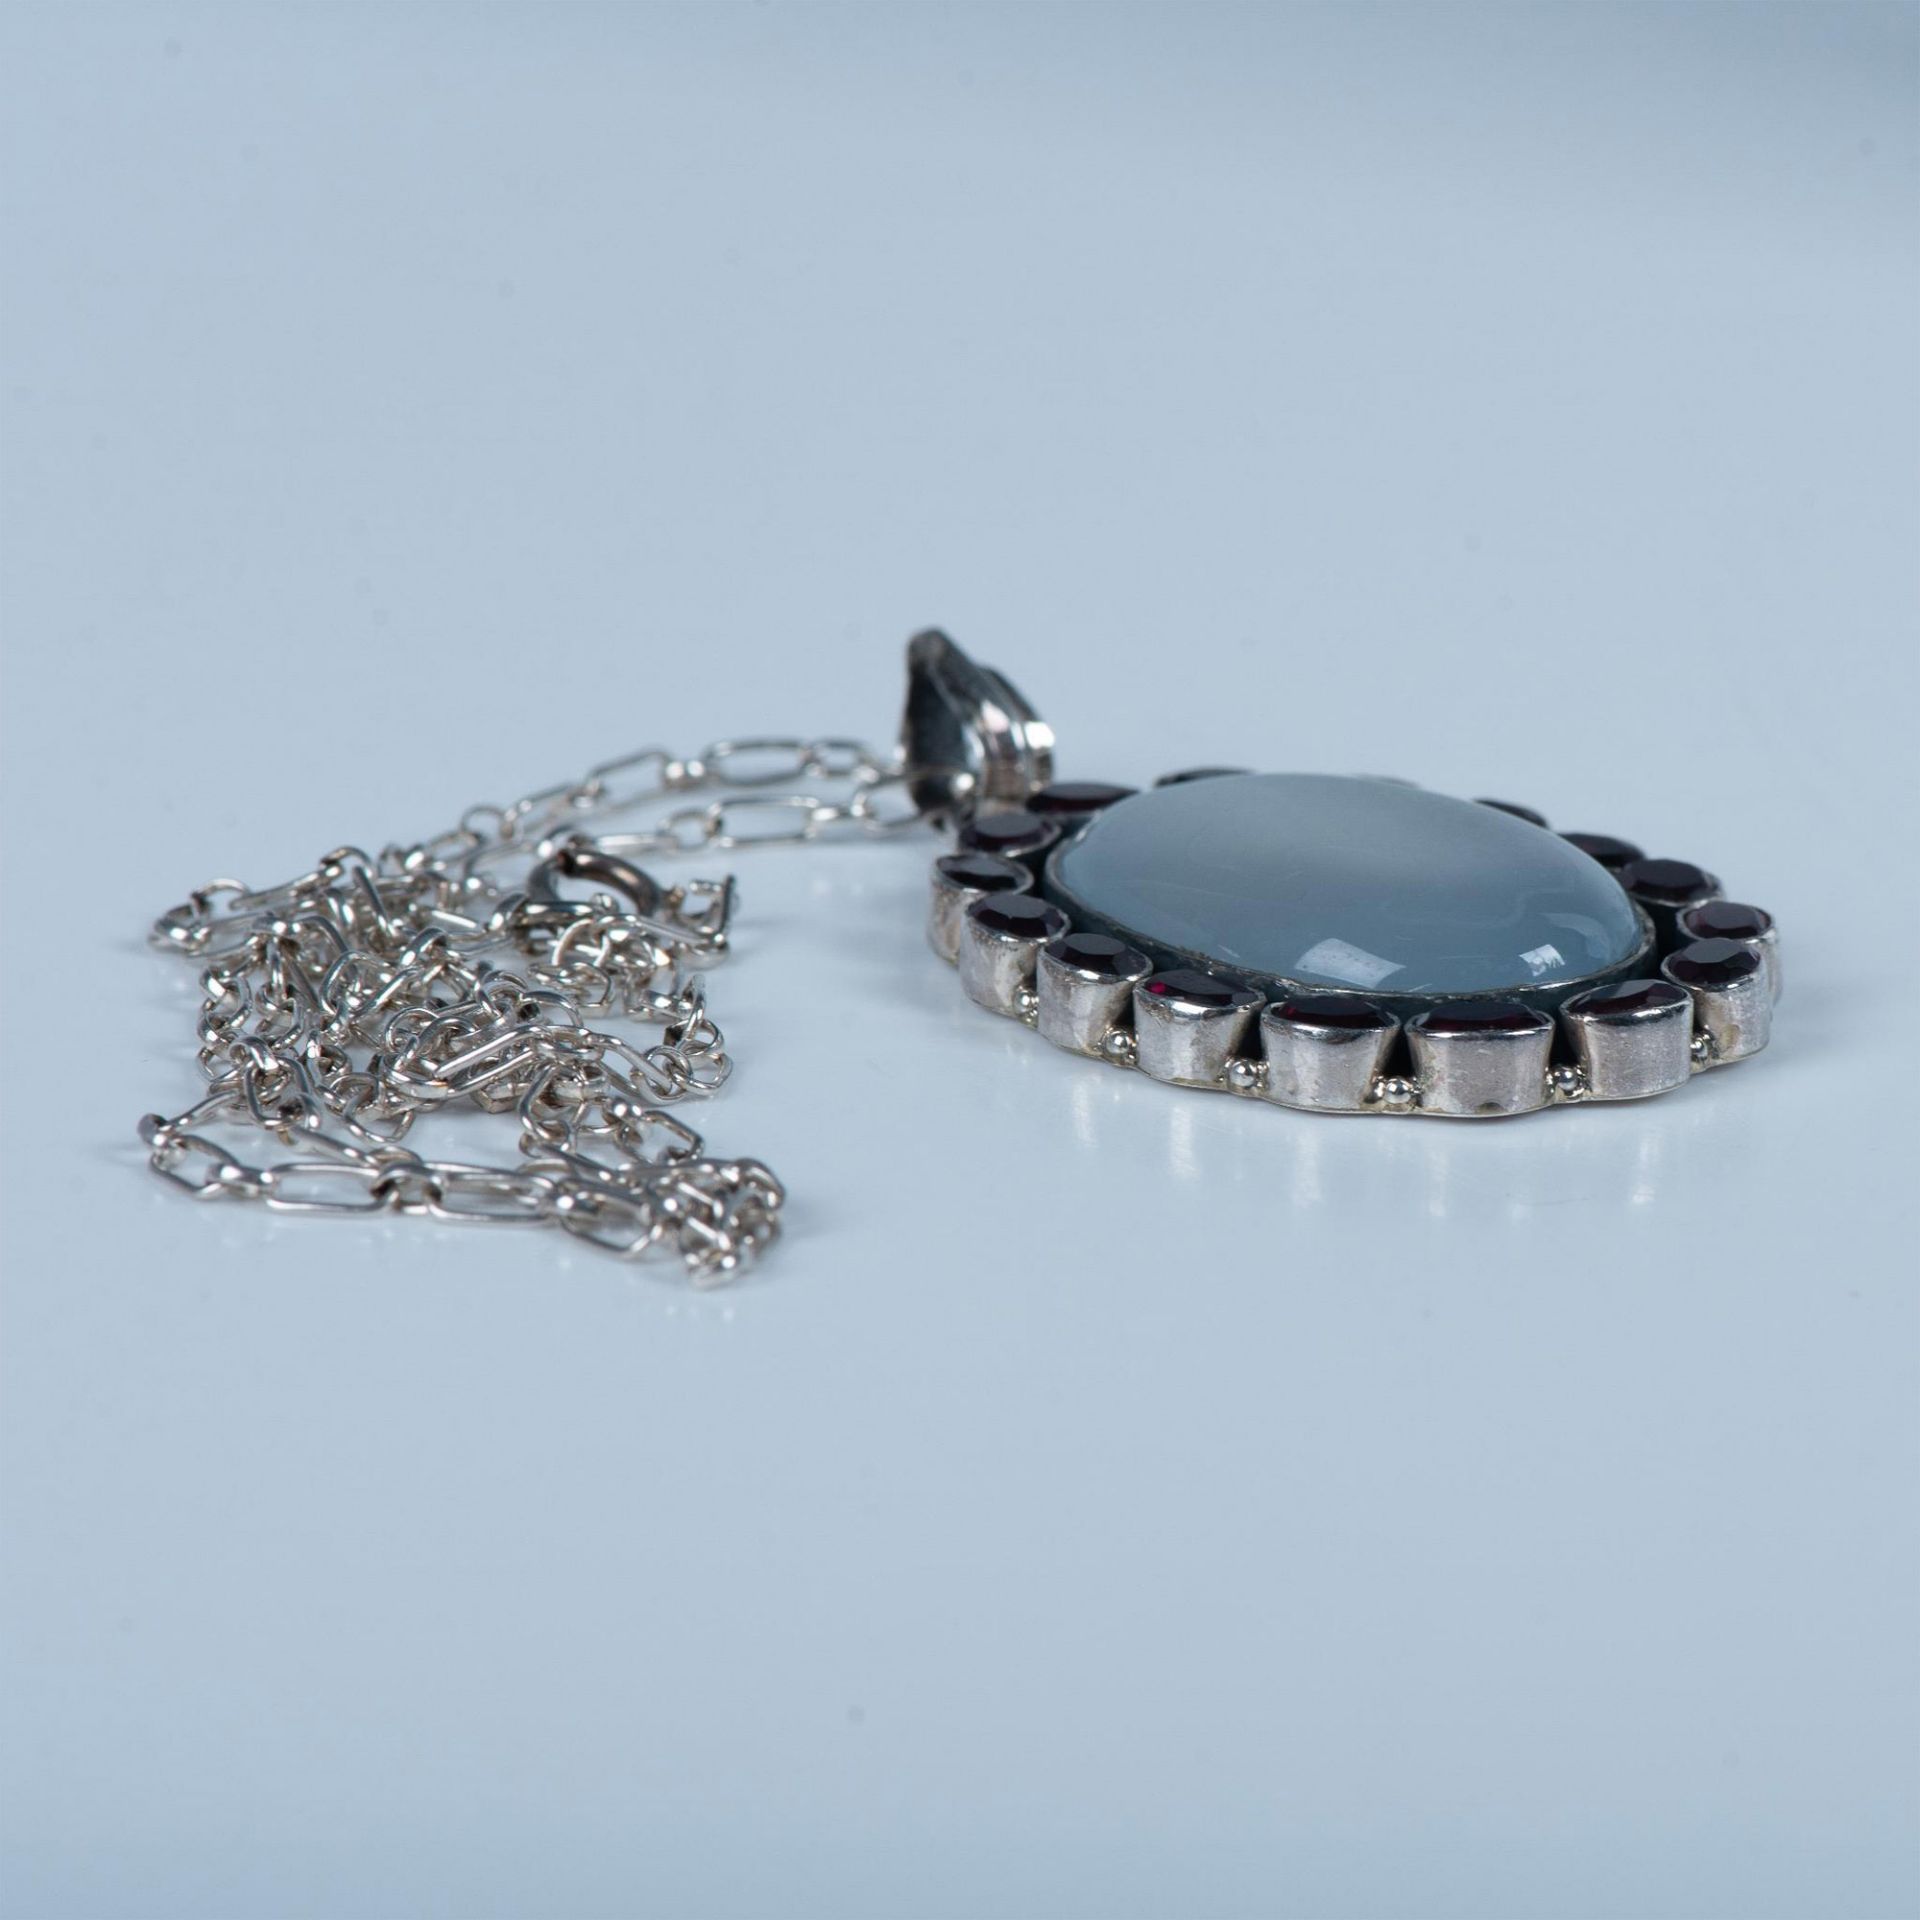 Vintage Sterling Silver, Moonstone & Garnet Pendant Necklace - Image 4 of 7